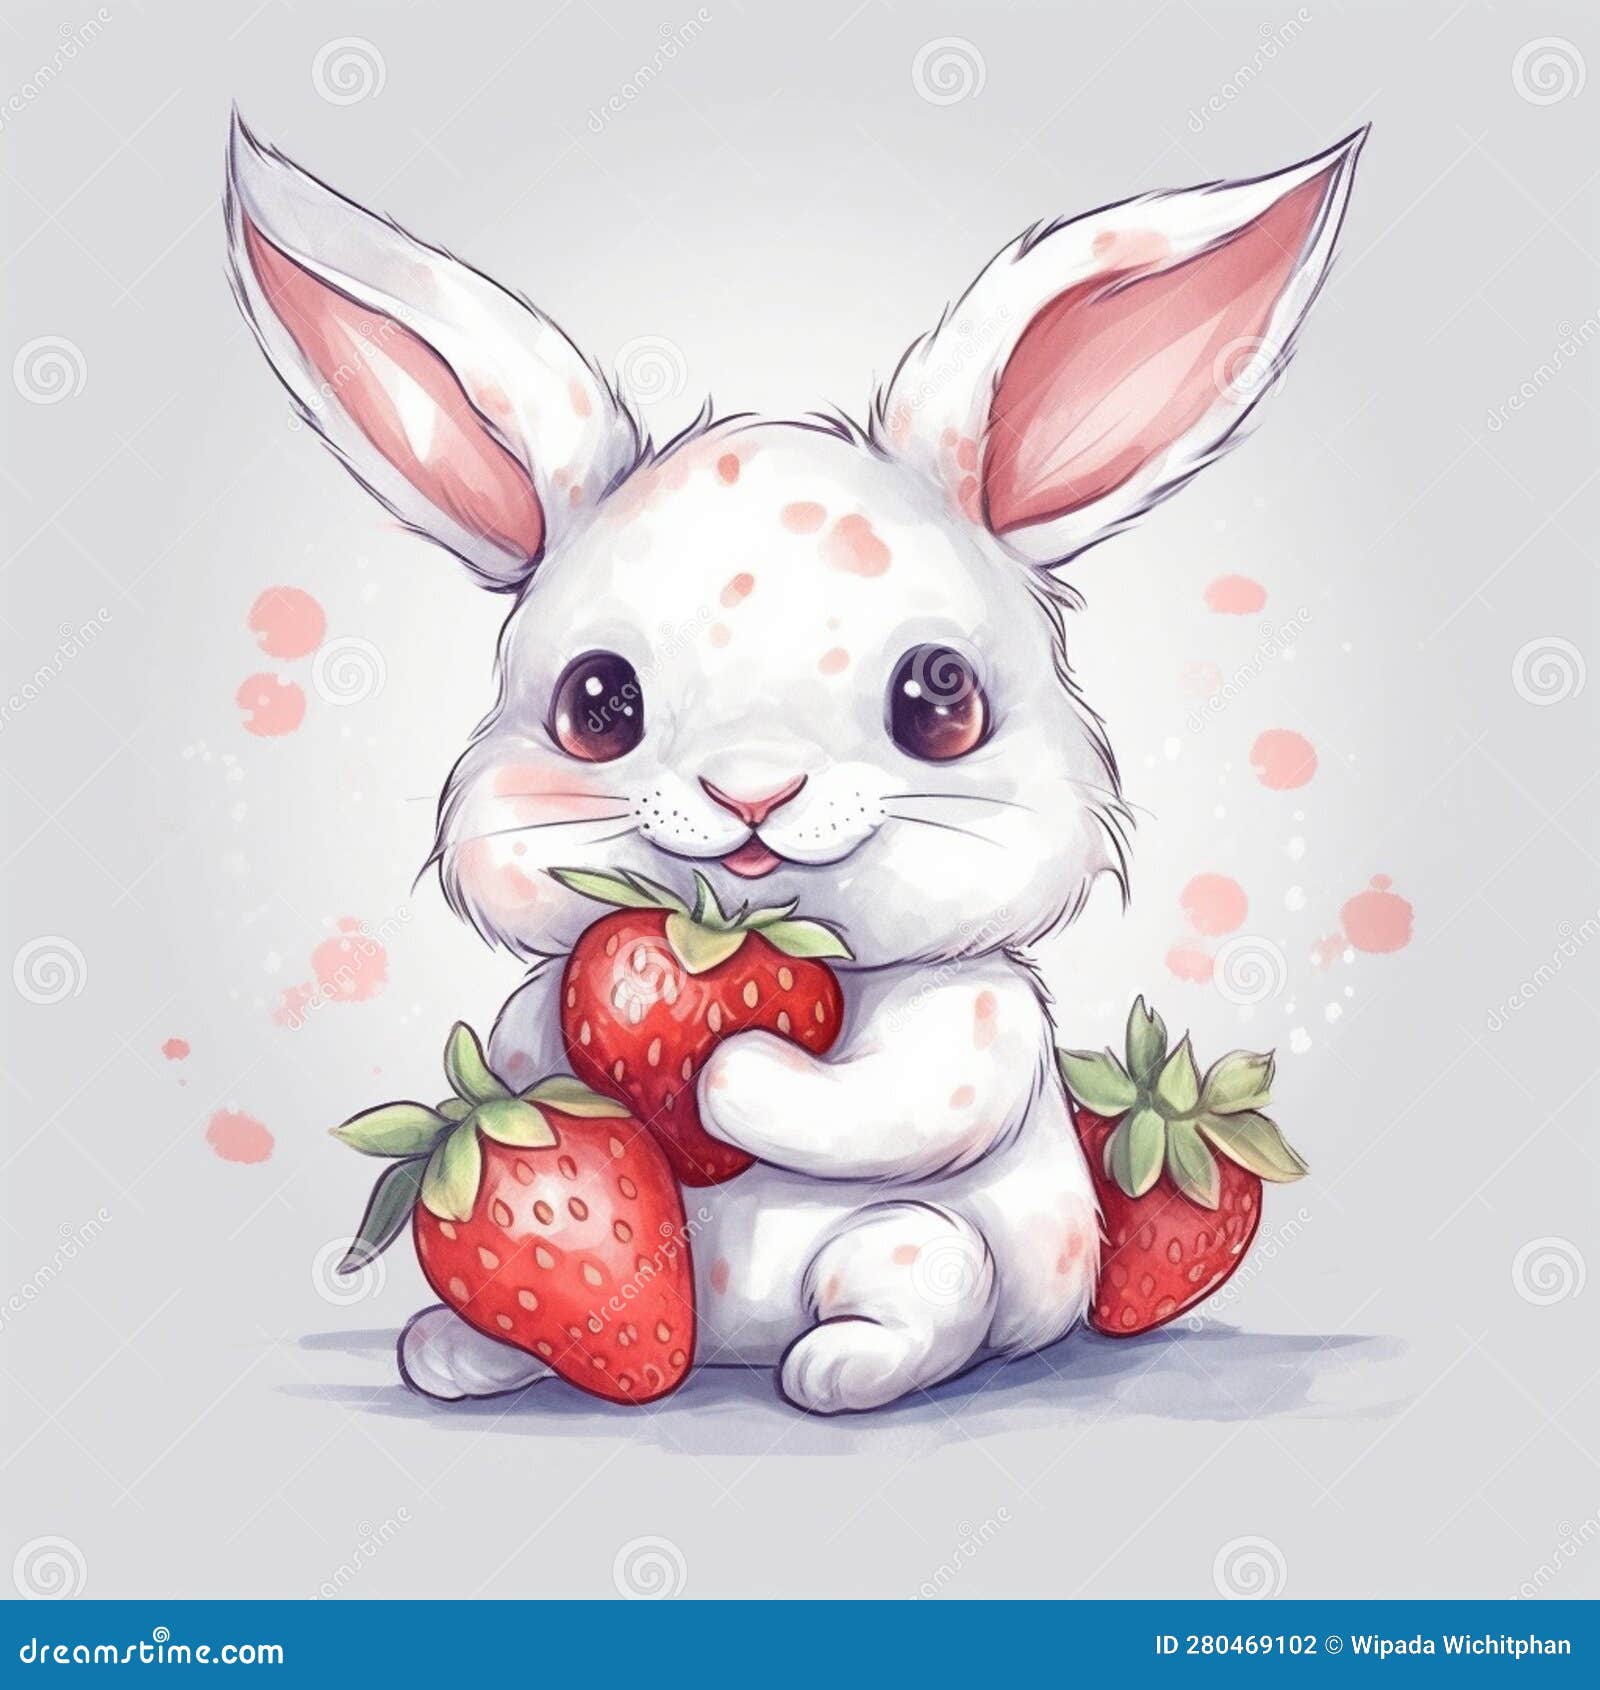 https://thumbs.dreamstime.com/z/joli-lapin-blanc-avec-dessin-anim%C3%A9-fraise-illustration-simple-d-art-num%C3%A9rique-mignon-de-petit-tenant-280469102.jpg